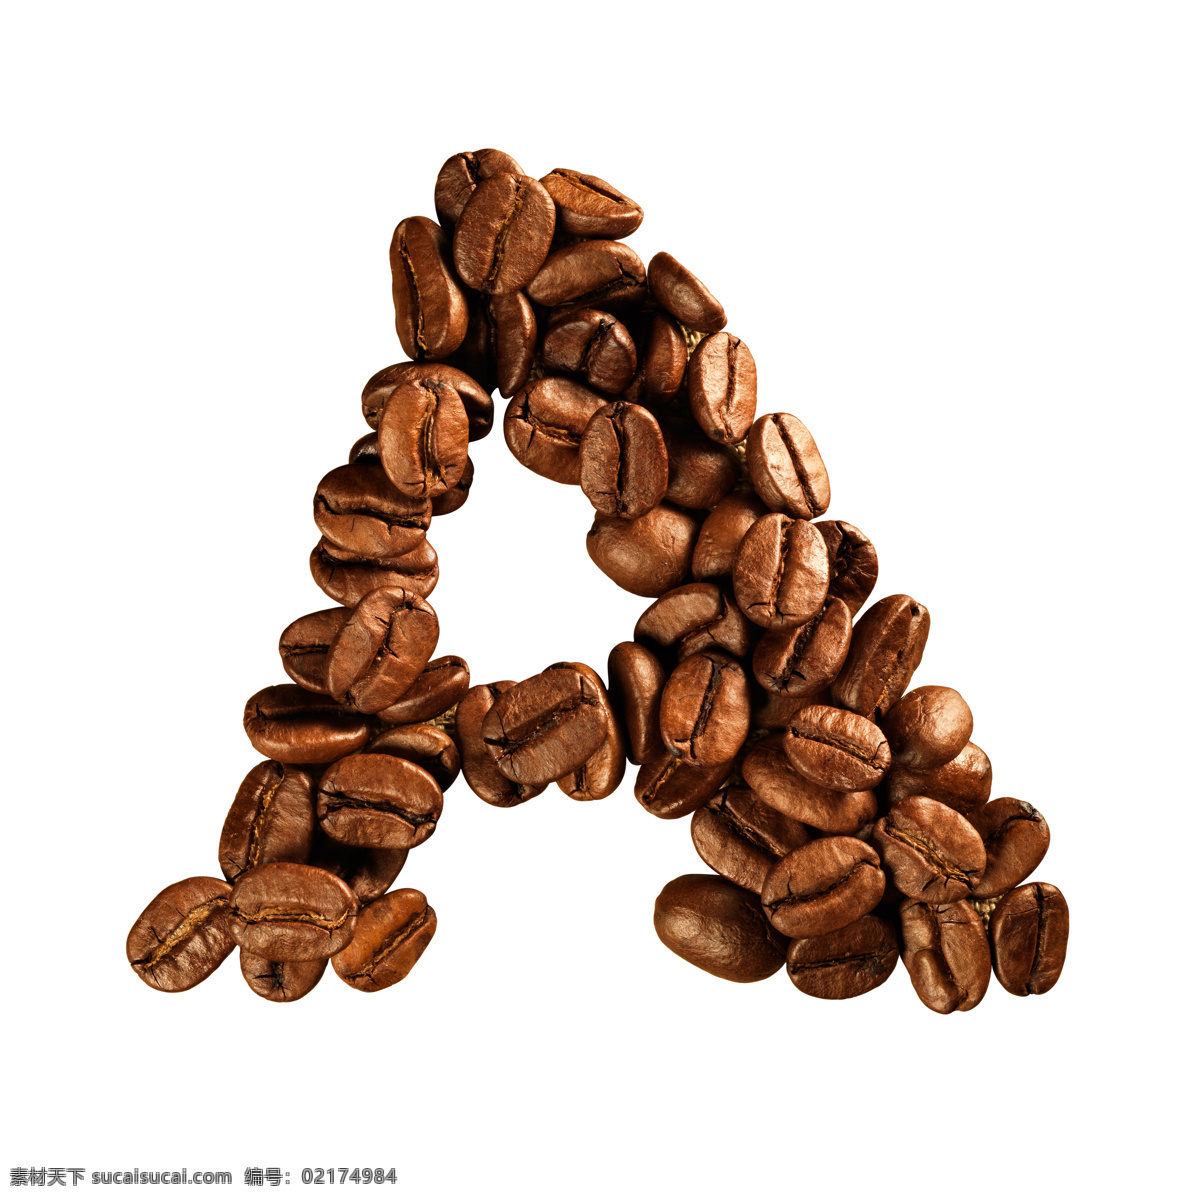 咖啡豆 组成 字母 a 咖啡 文字 艺术字体 书画文字 文化艺术 白色